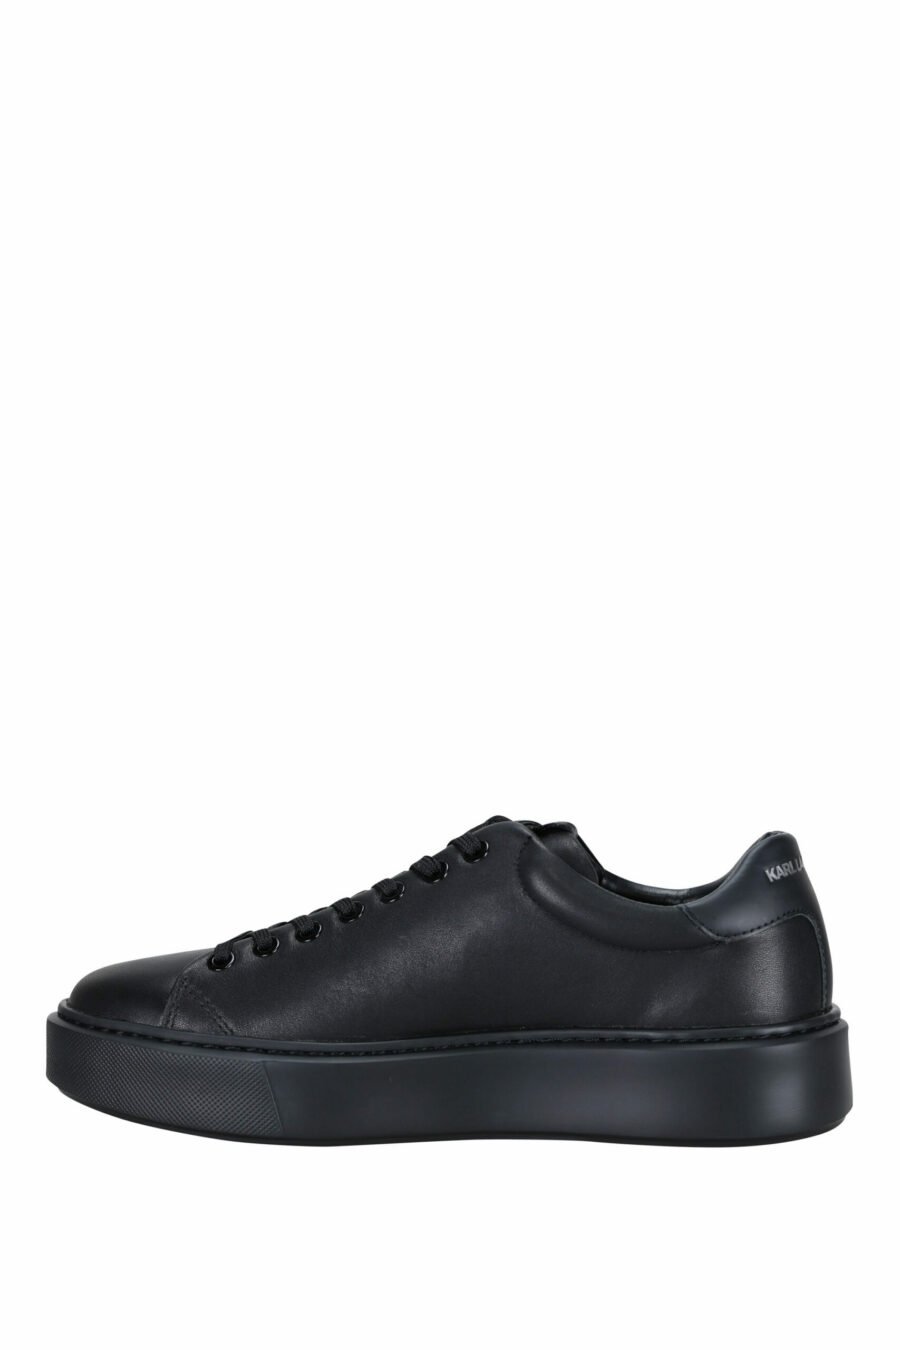 Zapatillas negras " maxi kup" con logo firma blanco y suela negra - 5059529325885 2 scaled